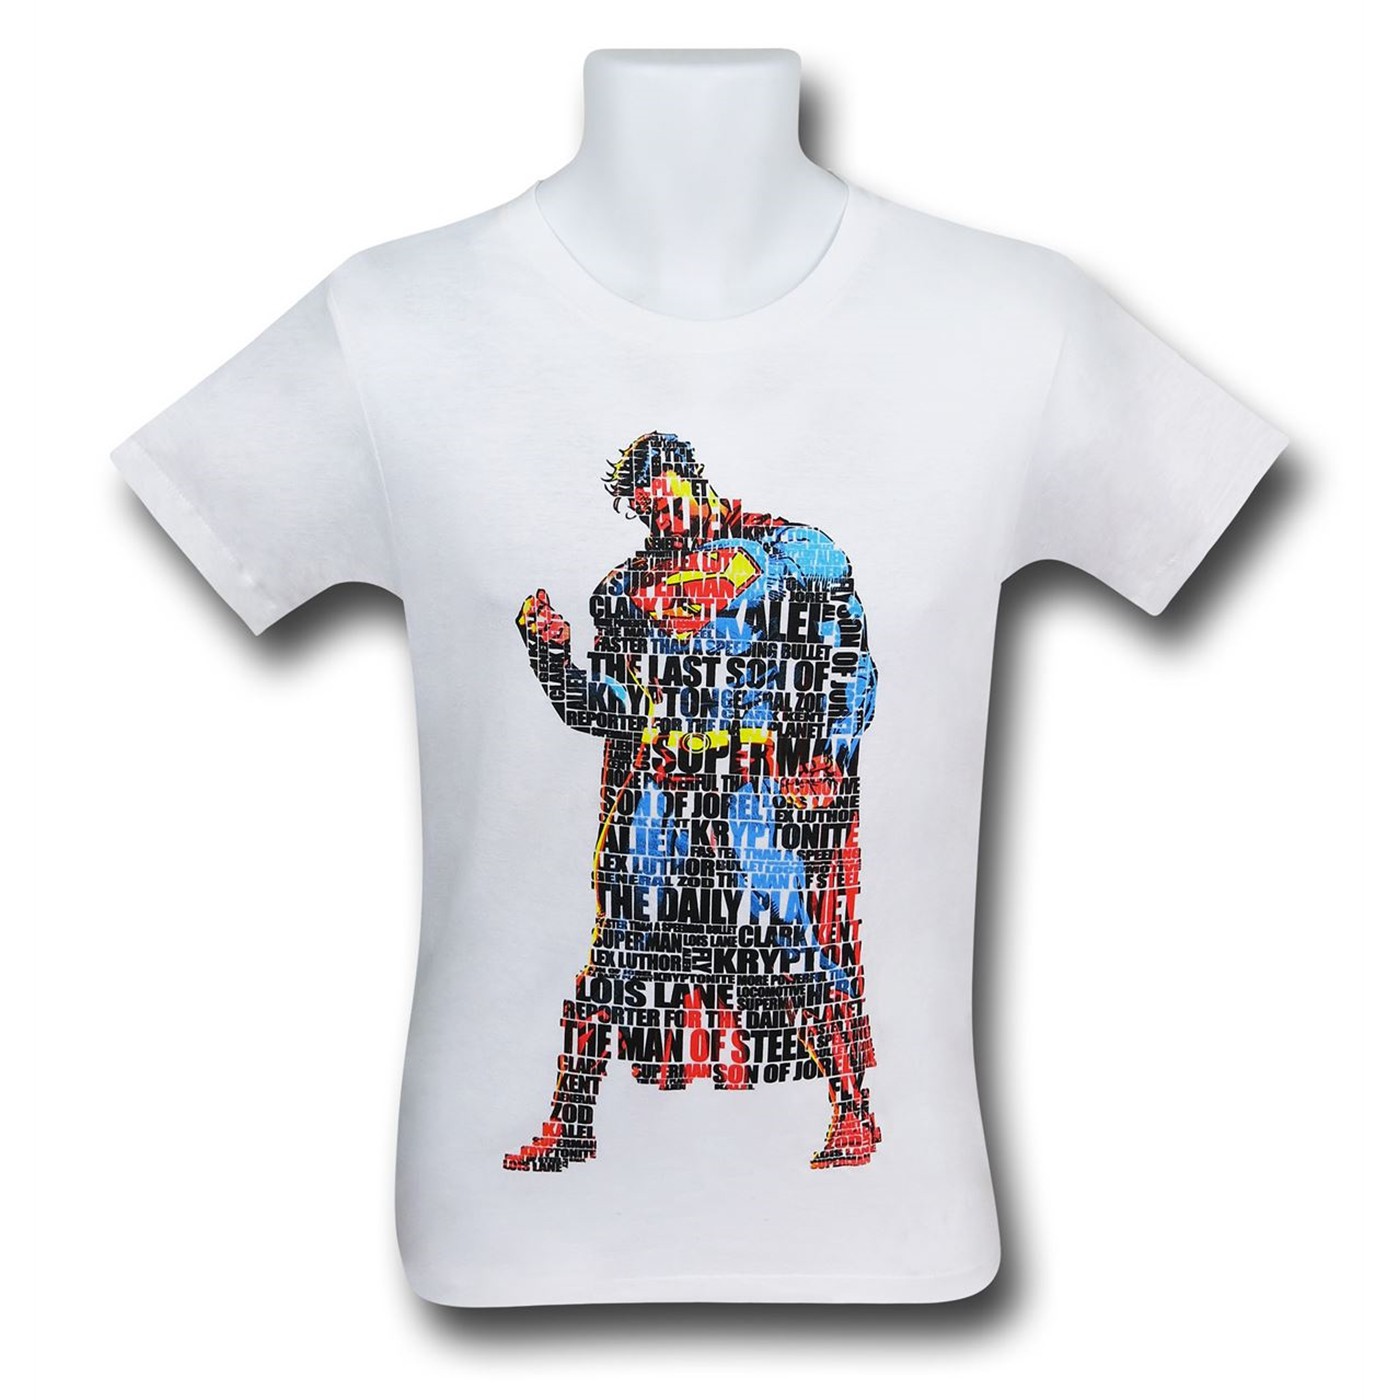 Superman Text Stance Men's T-Shirt